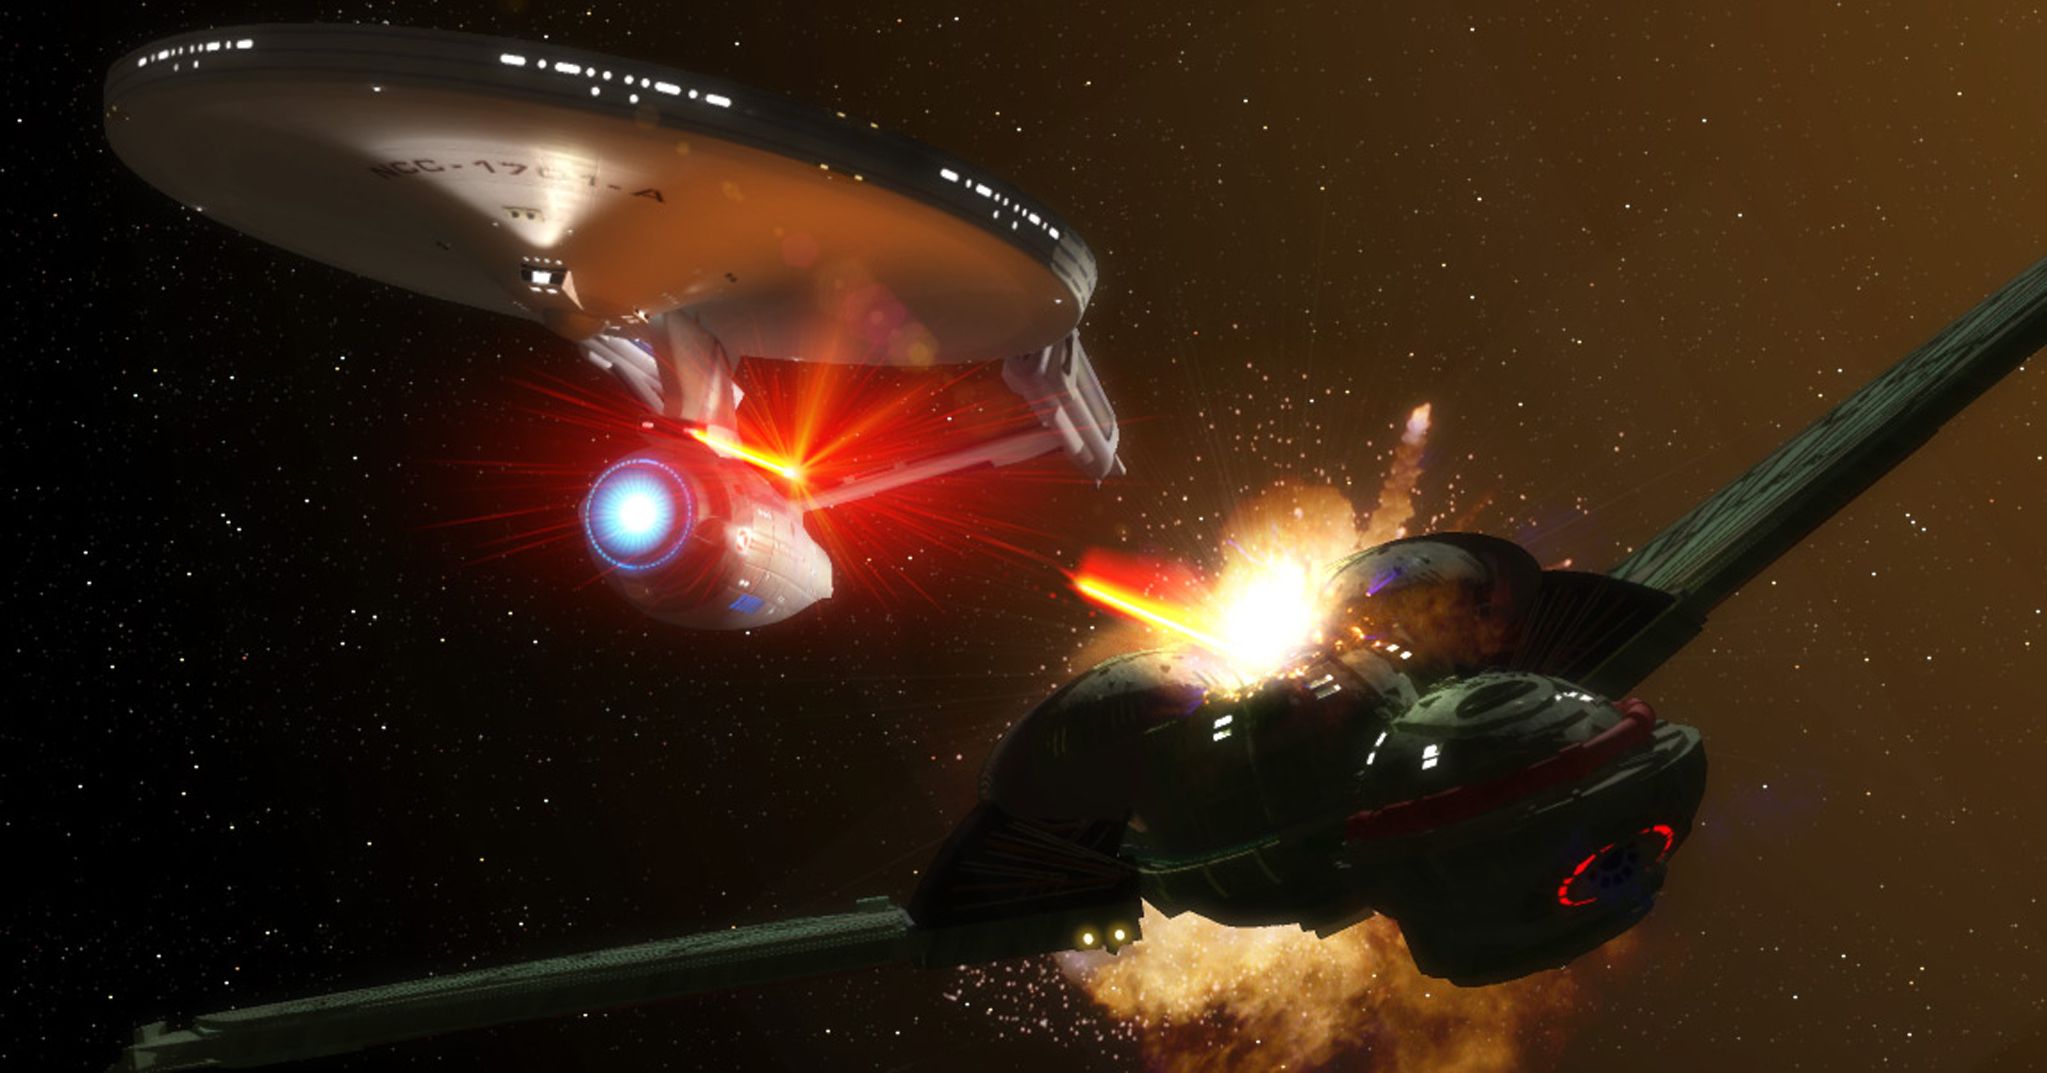 Enterprise Vs Klingon Space Battle Wallpaper | 2047x1073 | ID:47148